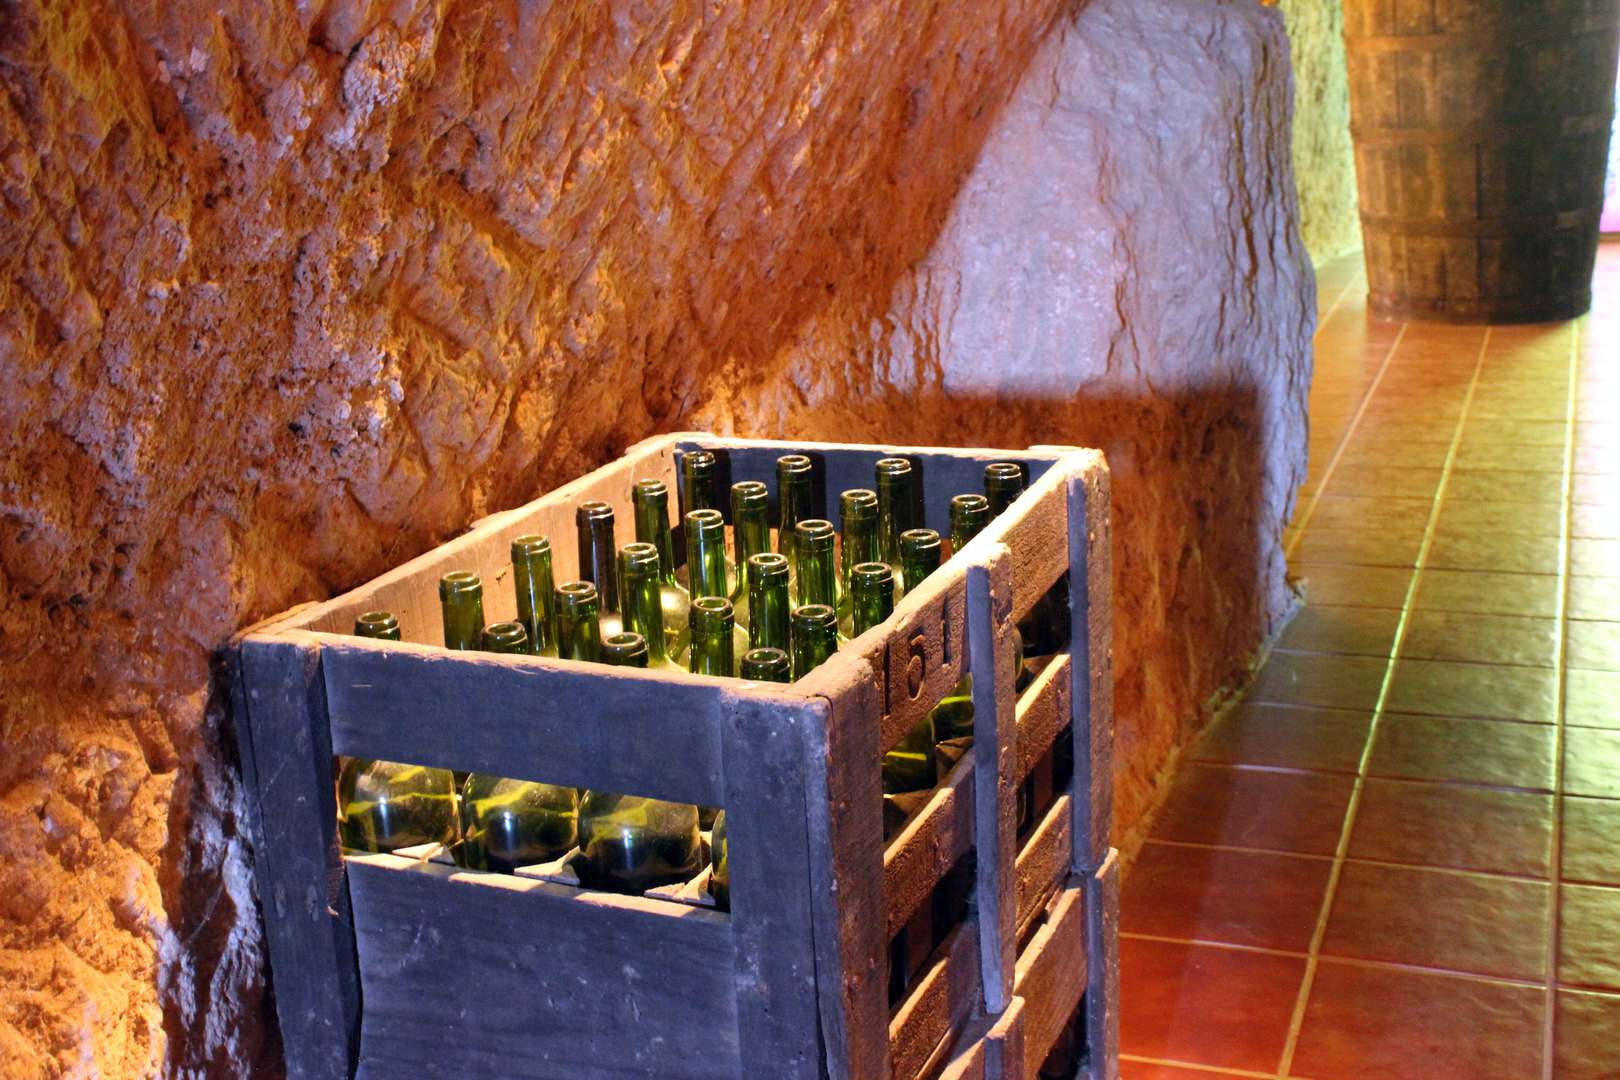 Centro de Interpretación del vino - Caja botellas